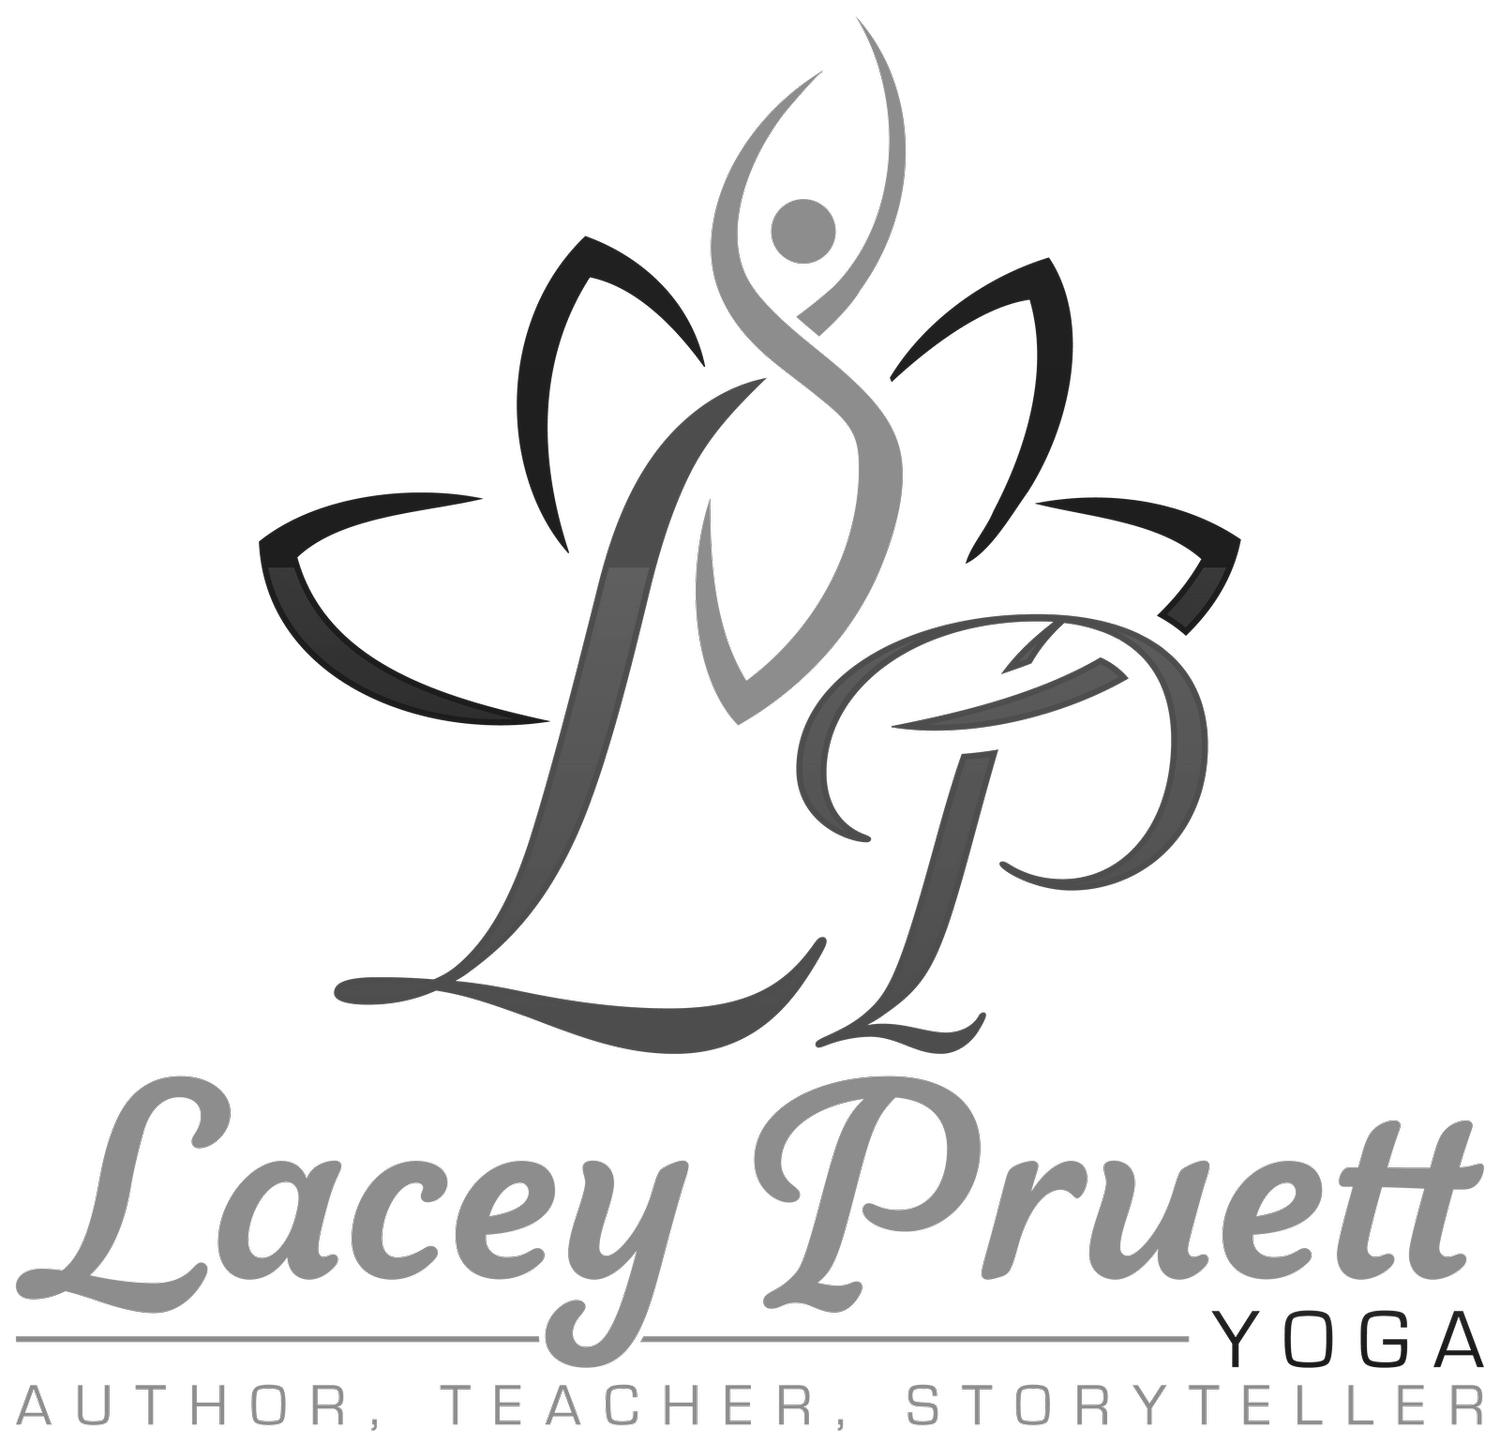 Lacey Pruett